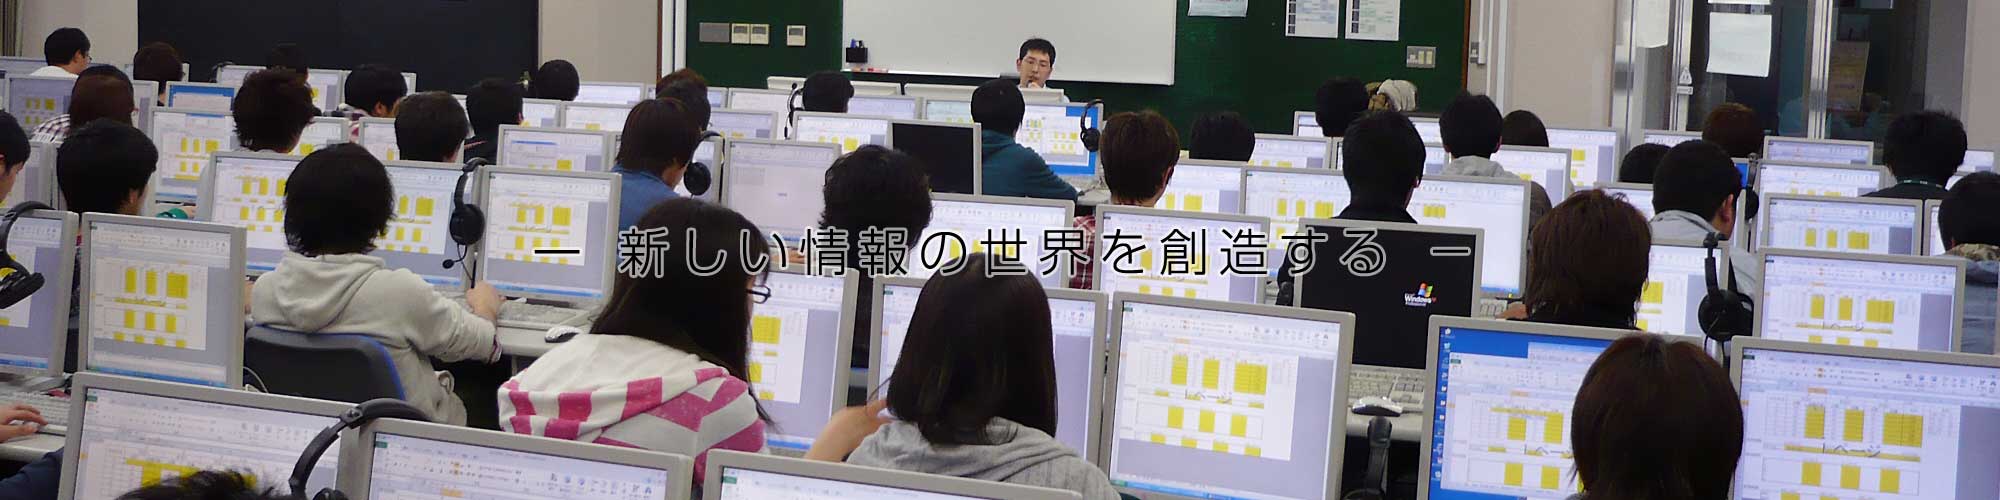 日本大学理工学部「応用情報工学科」カリキュラム